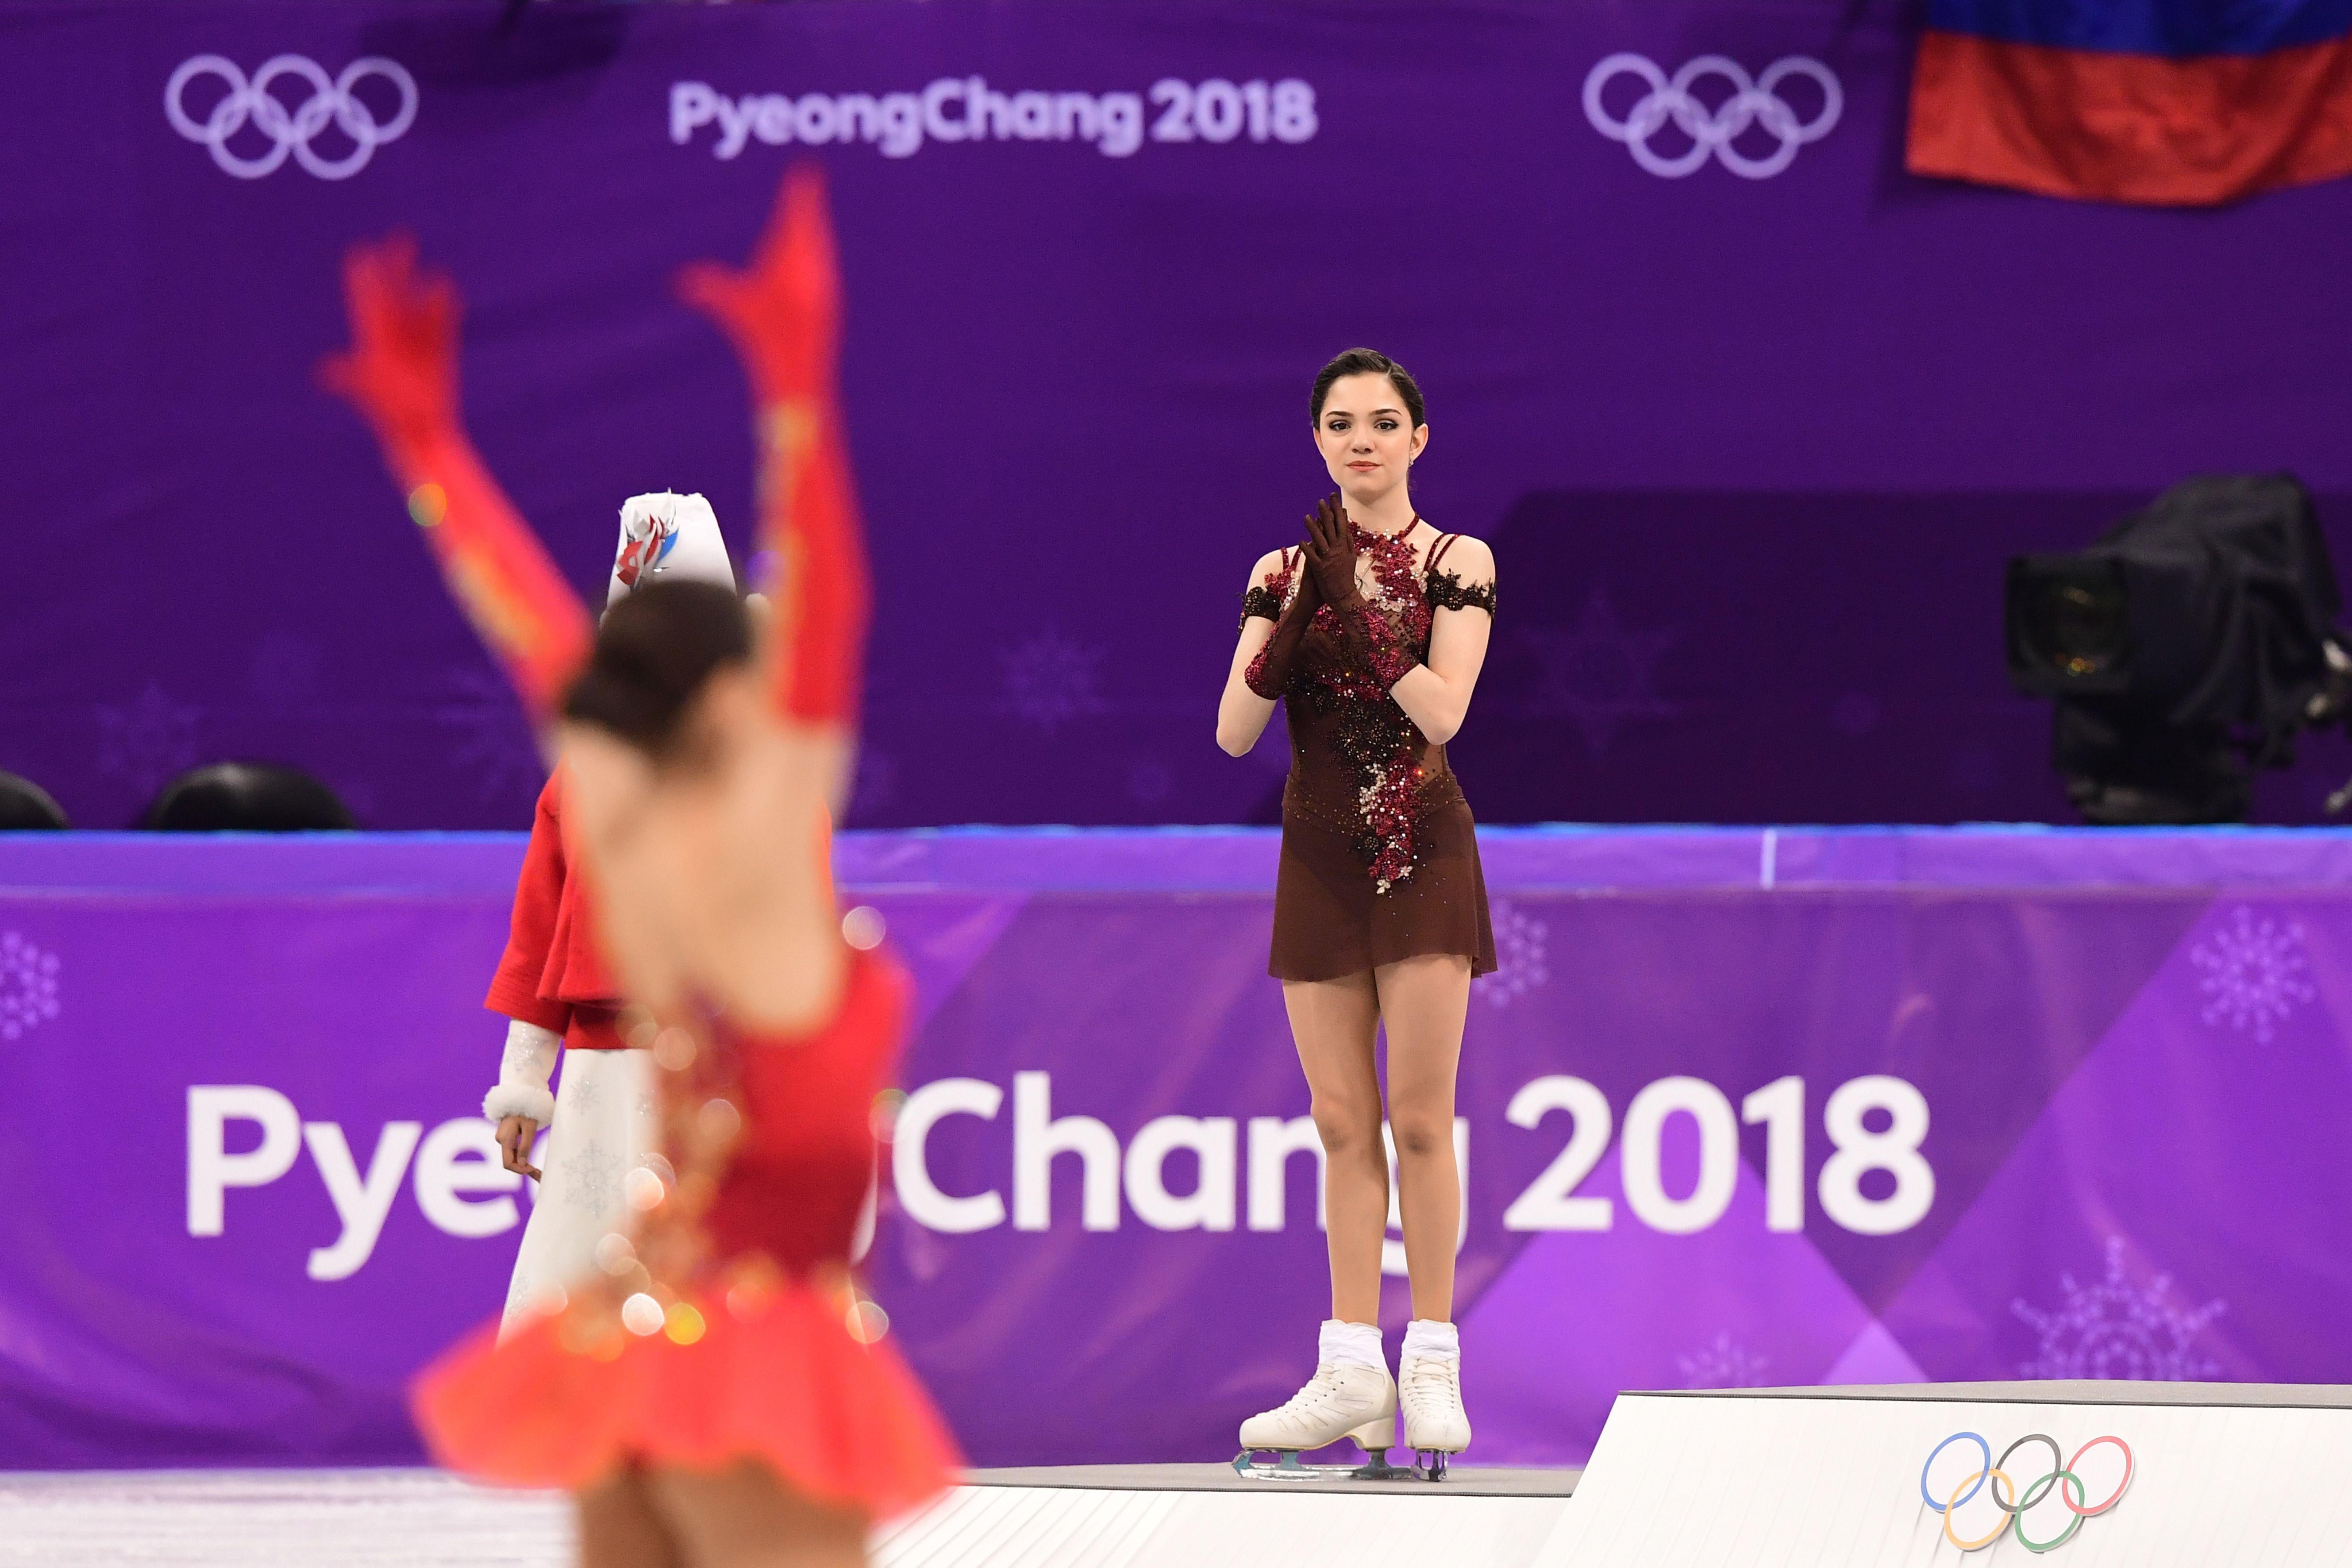 Gold medalist Russia’s Alina Zagitova celebrates as silver medalist Russia’s Evgenia Medvedeva claps.